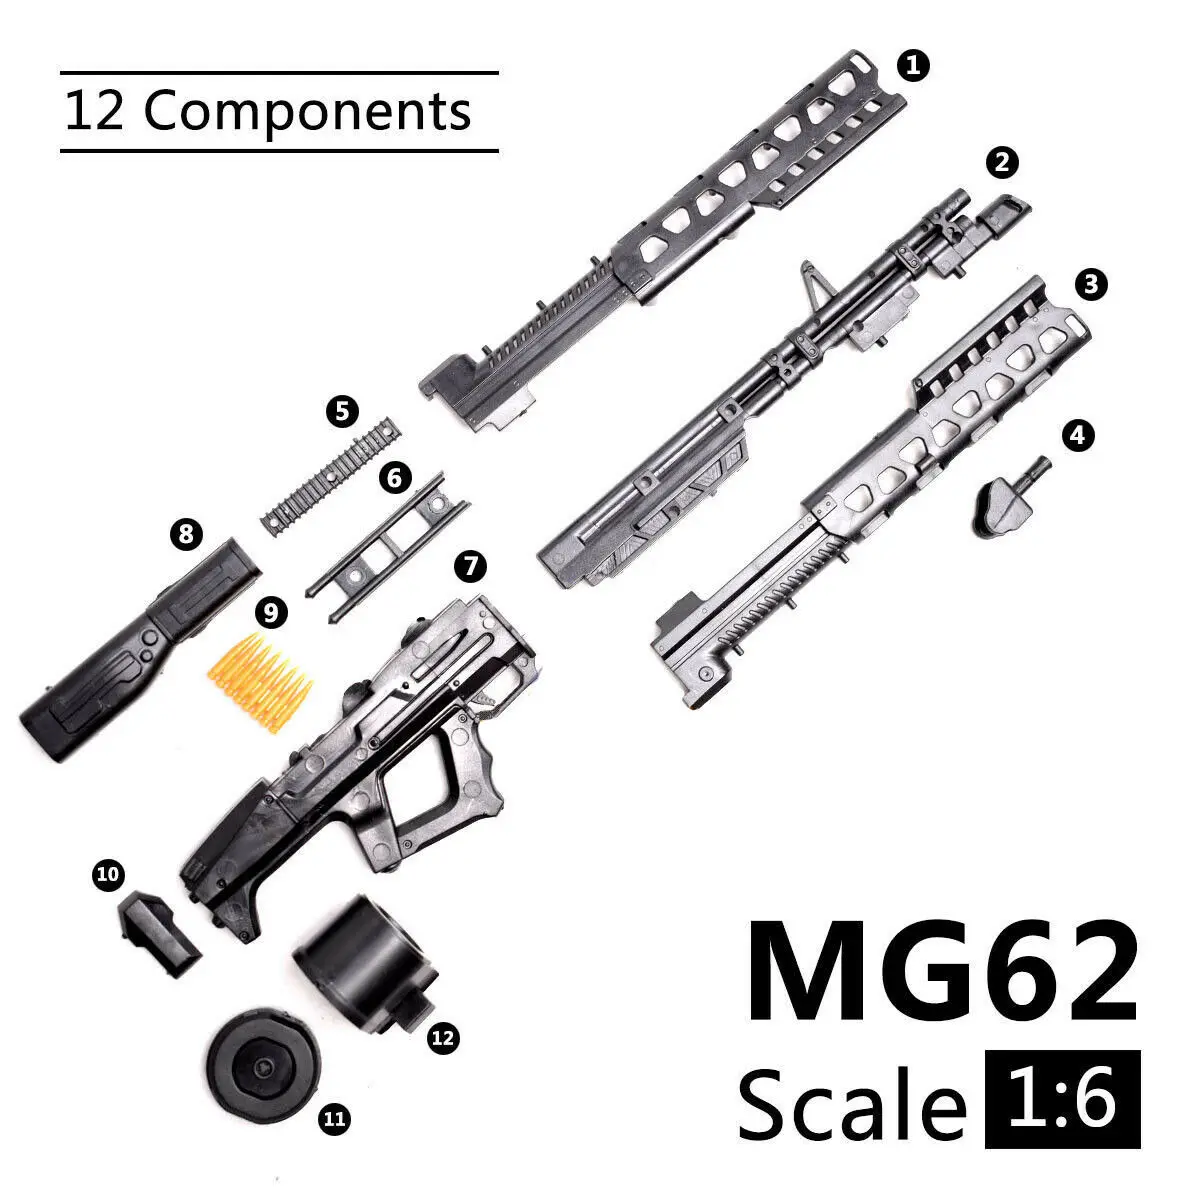 1/6 масштаб Аватар MG62 сборки пистолет модель головоломки здание кирпич пистолет оружие фигурка